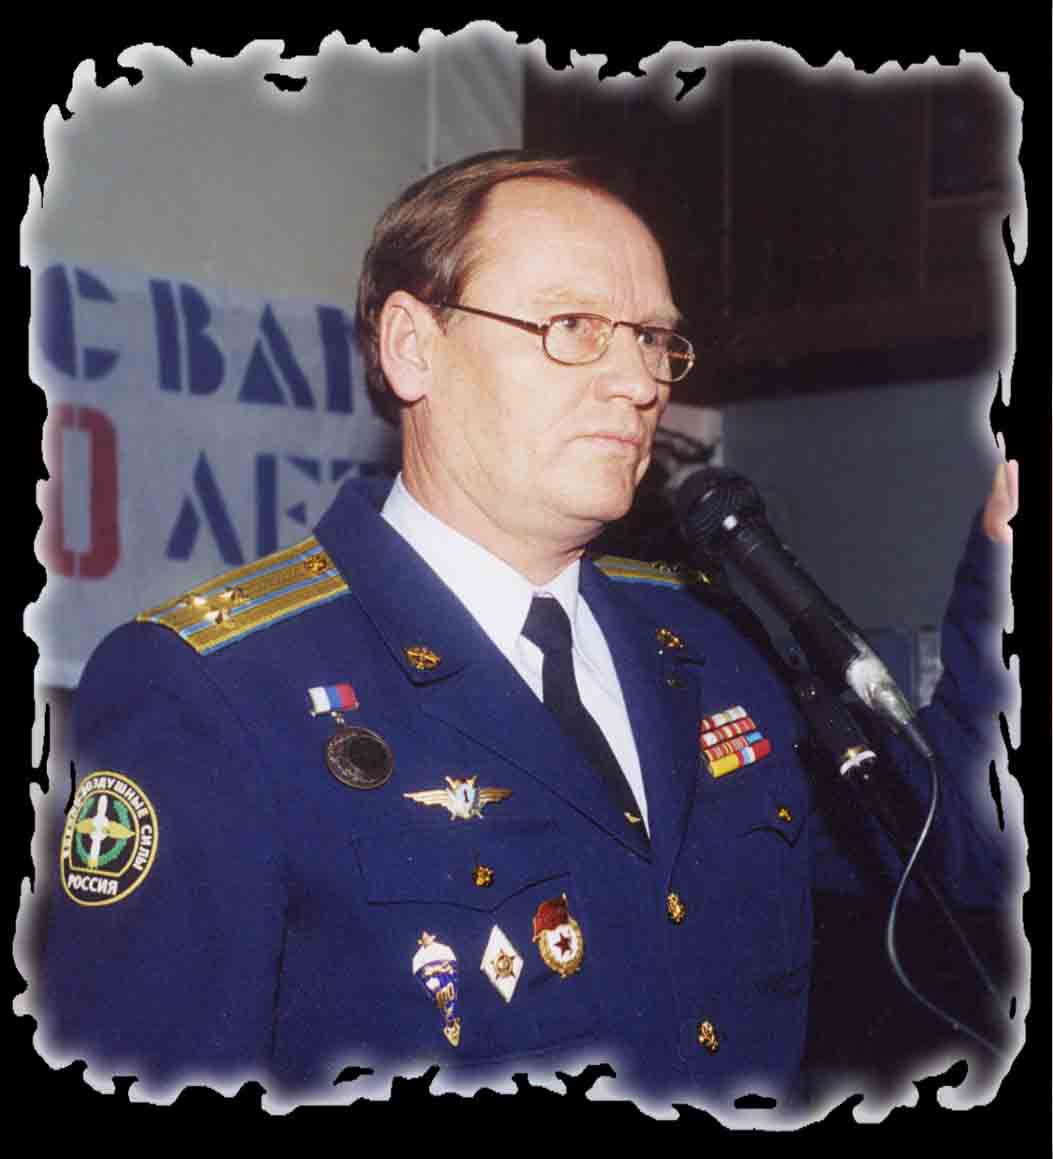 Валентин Колесников